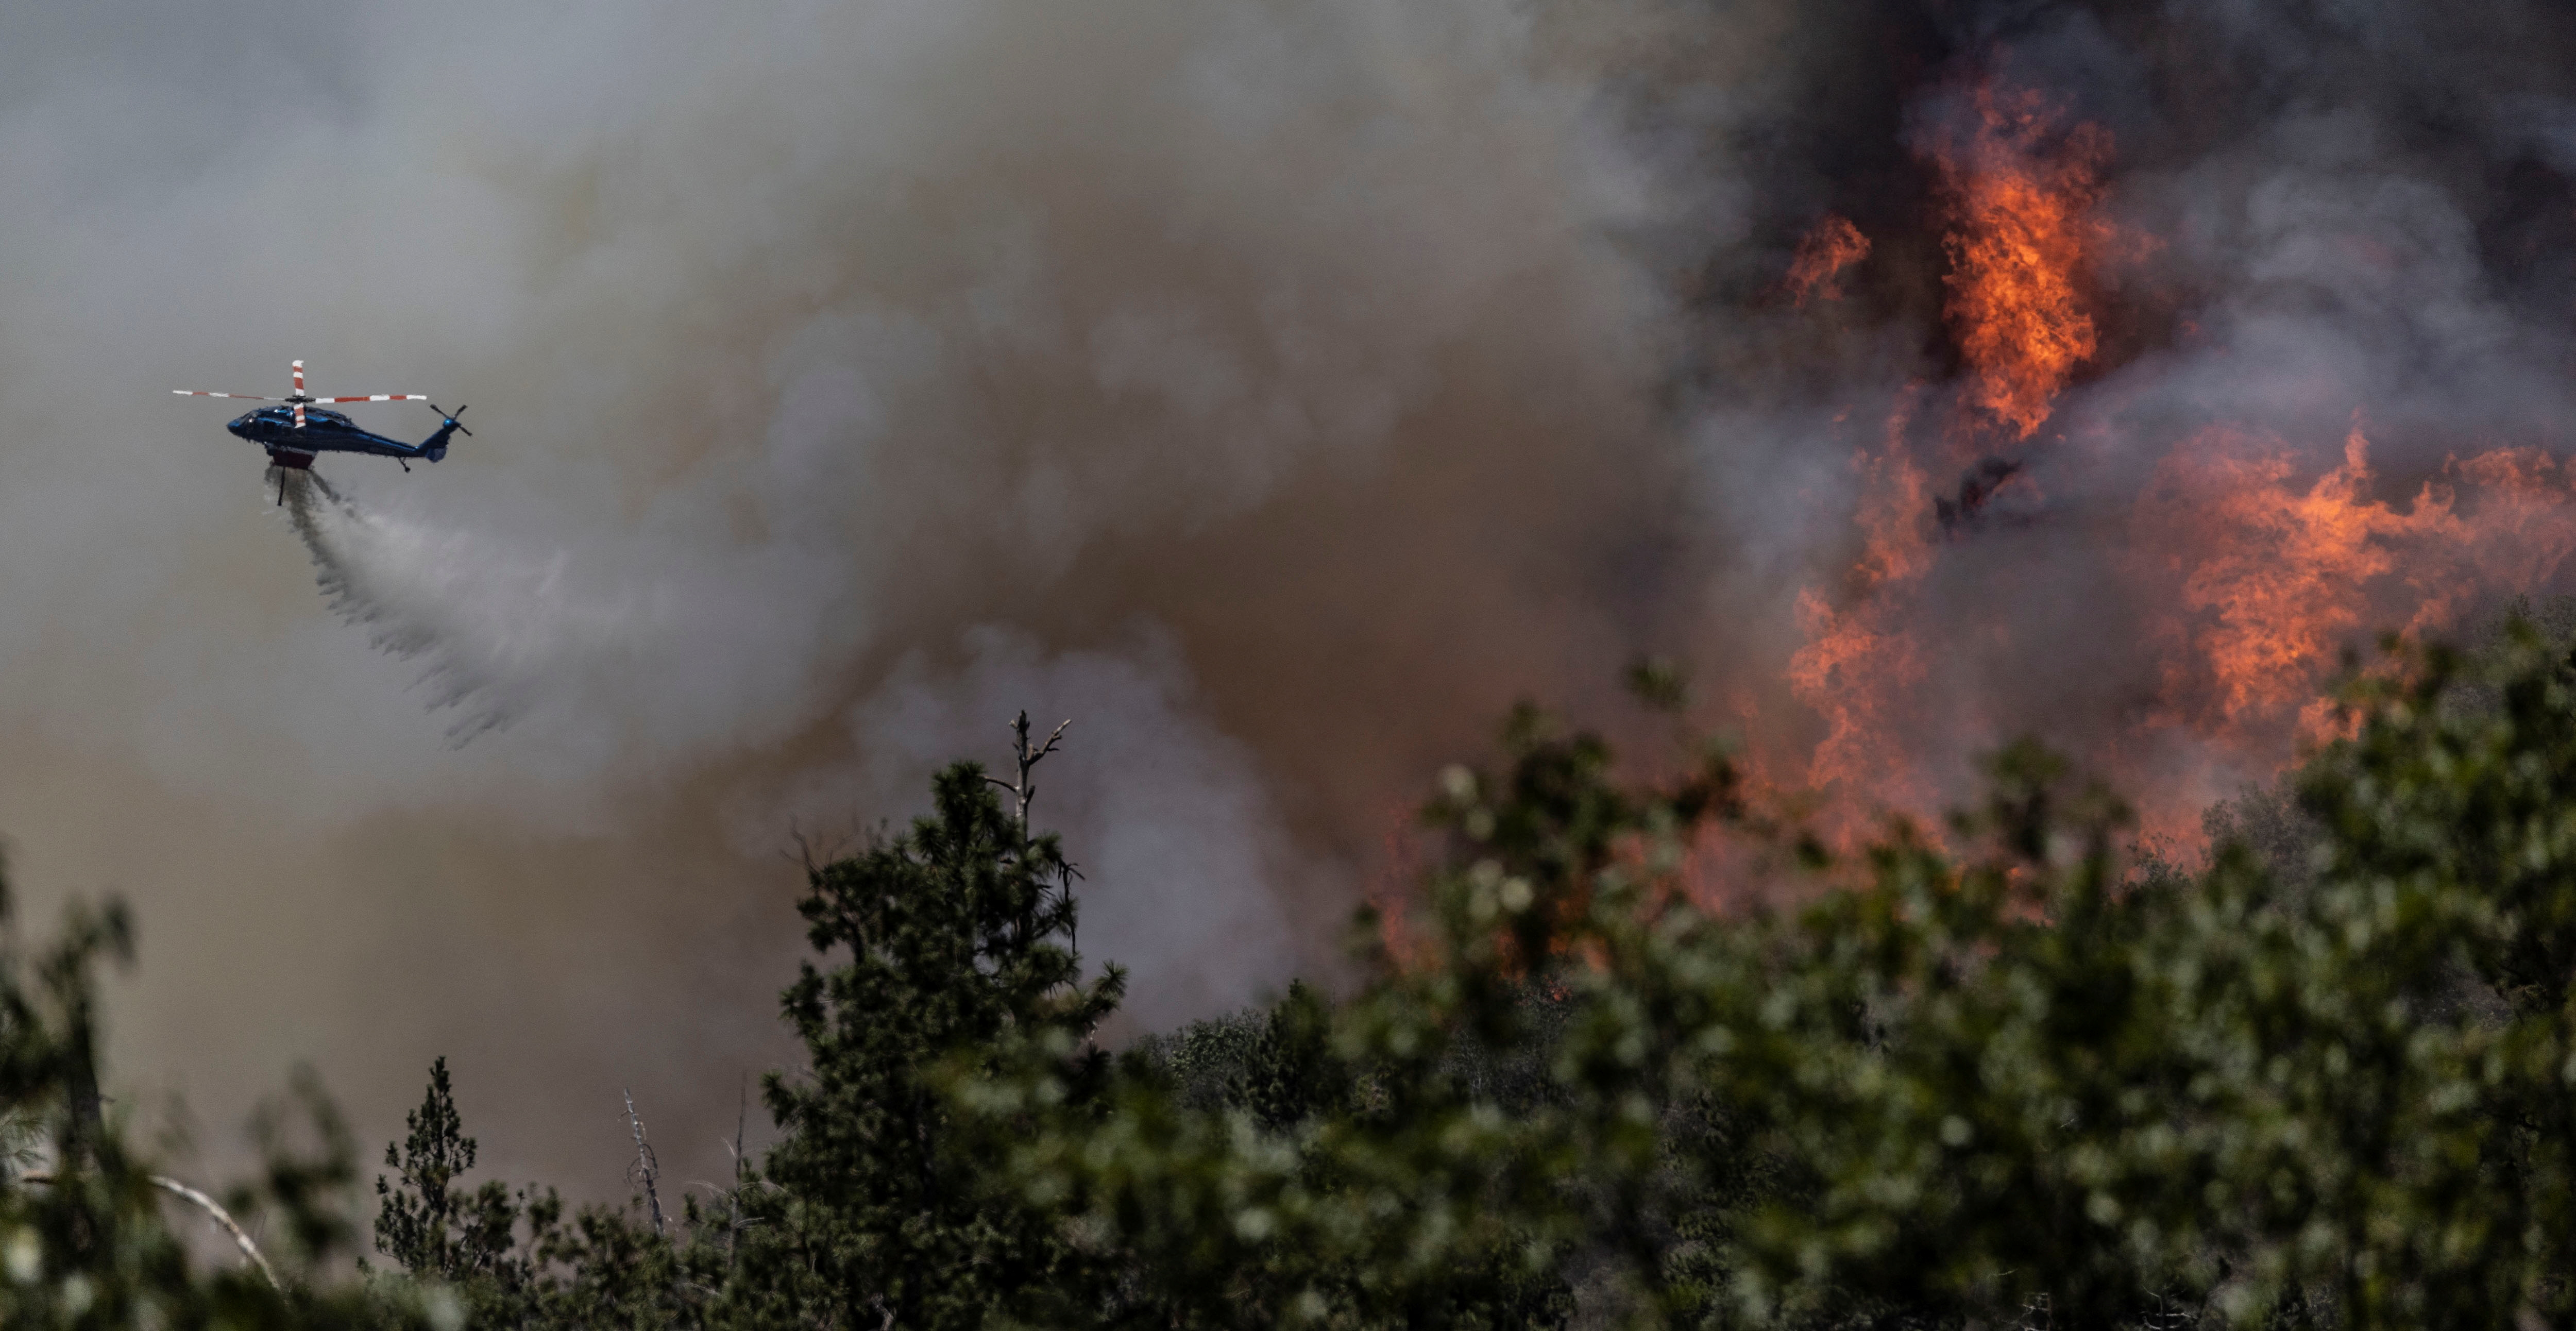 Un helicóptero de extinción de incendios arroja agua en la ladera de una colina para controlar el Oak Fire mientras arde cerca de Darrah en el condado de Mariposa, California, EE. UU., el 24 de julio de 2022. REUTERS/Carlos Barria